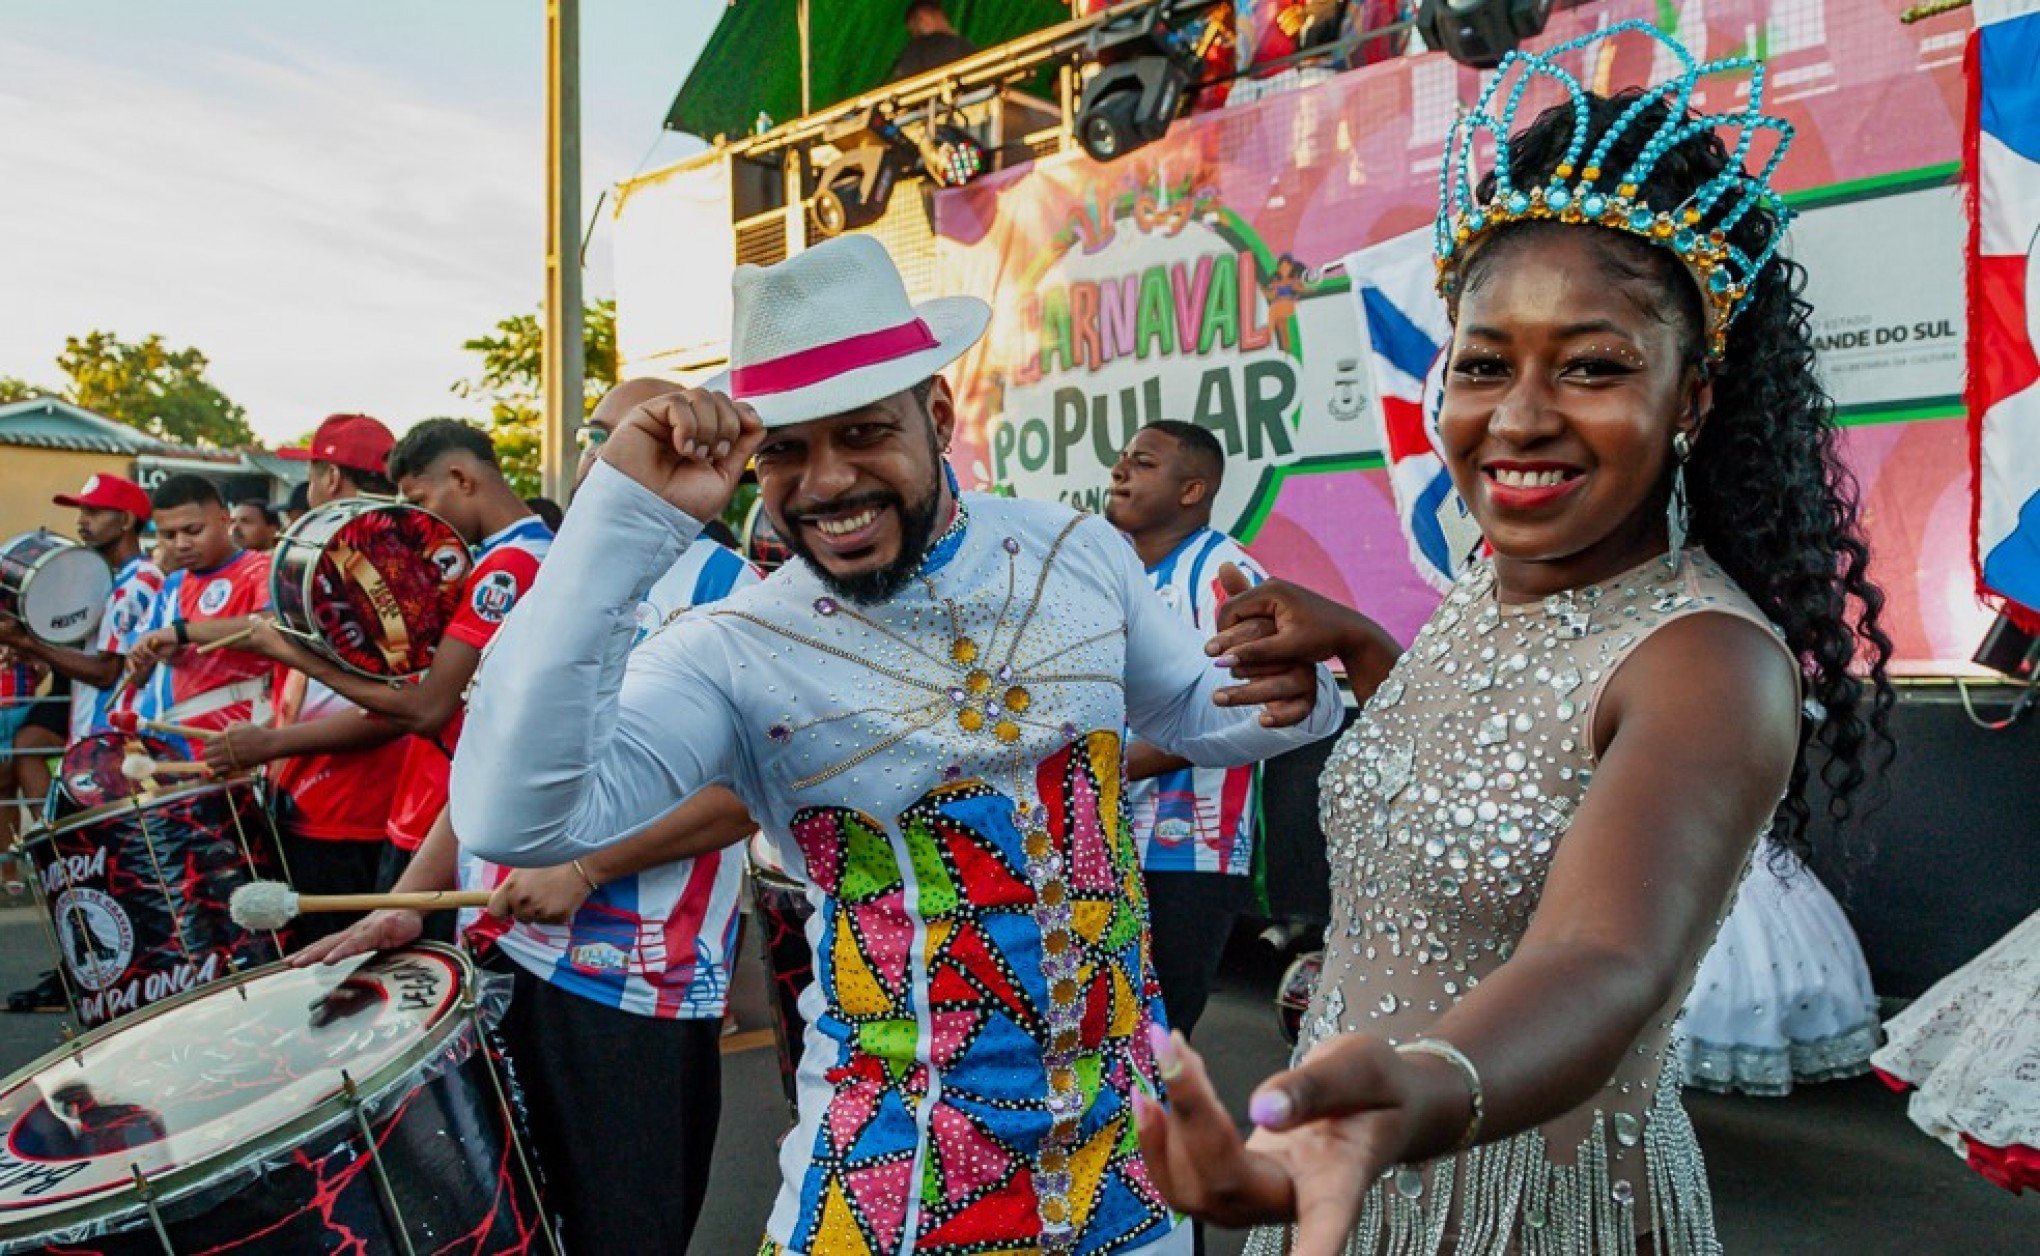 NOITE DE HARMONIA: Final de semana será de folia para quem gosta de carnaval em Canoas